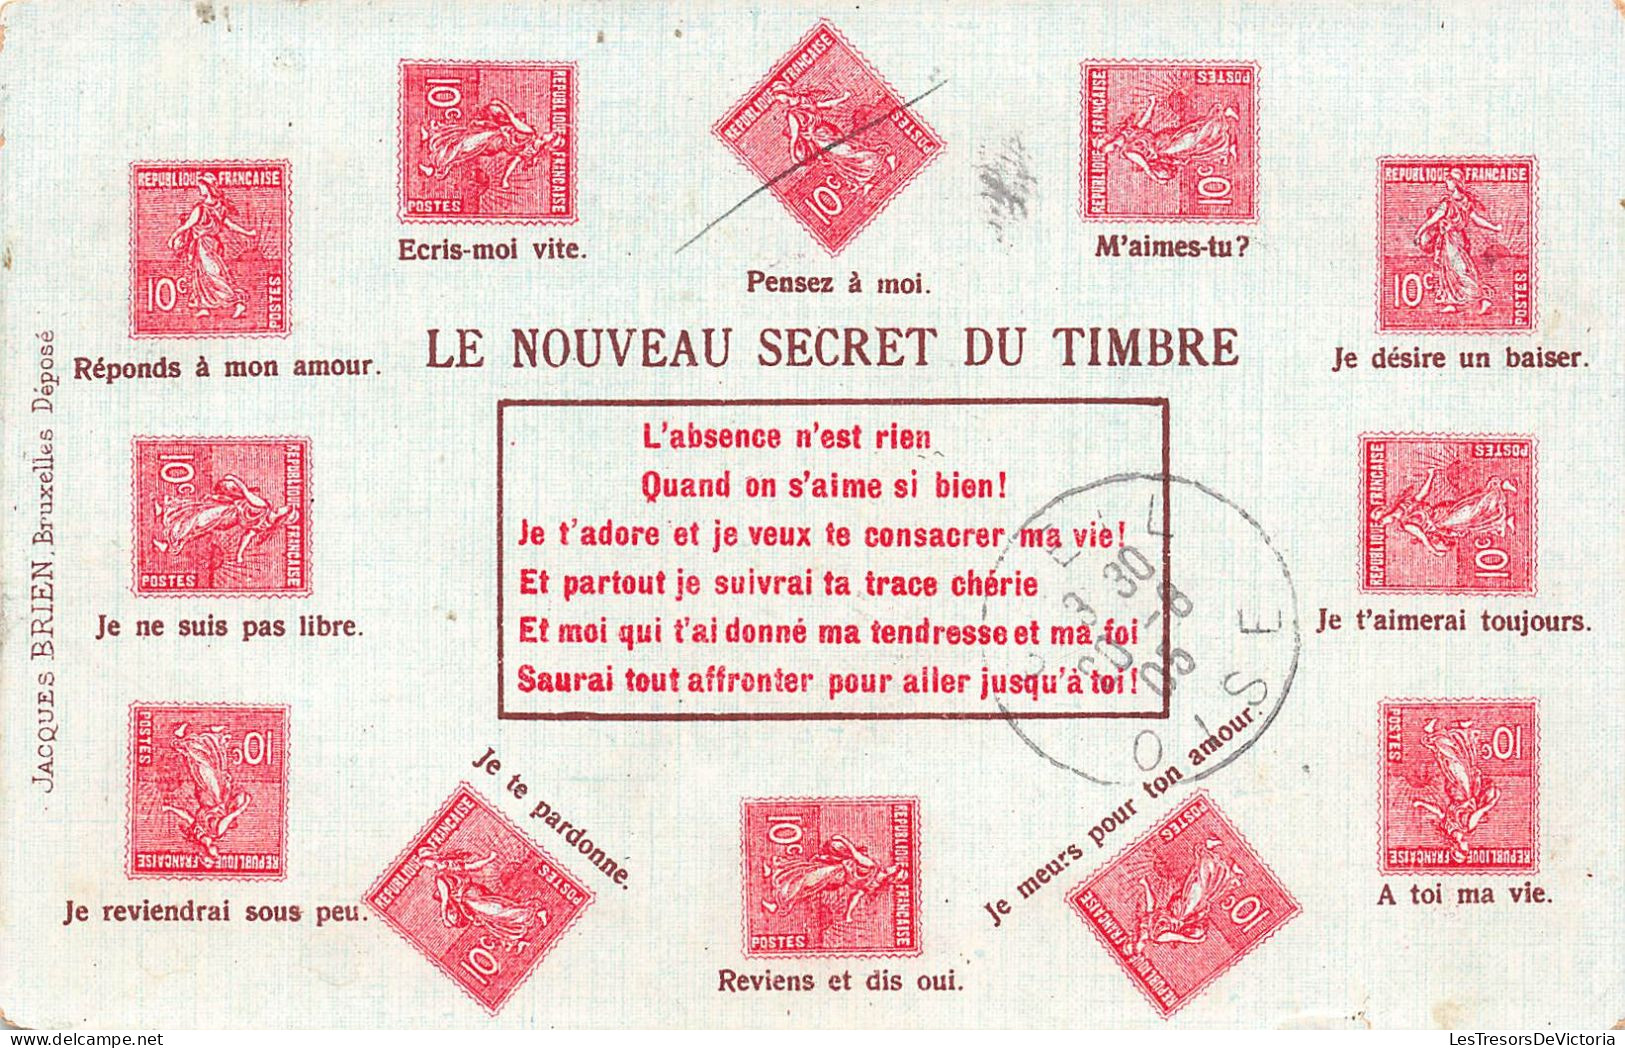 TIMBRES - Le Nouveau Secret Du Timbre - Colorisé - Carte Postale Ancienne - Timbres (représentations)